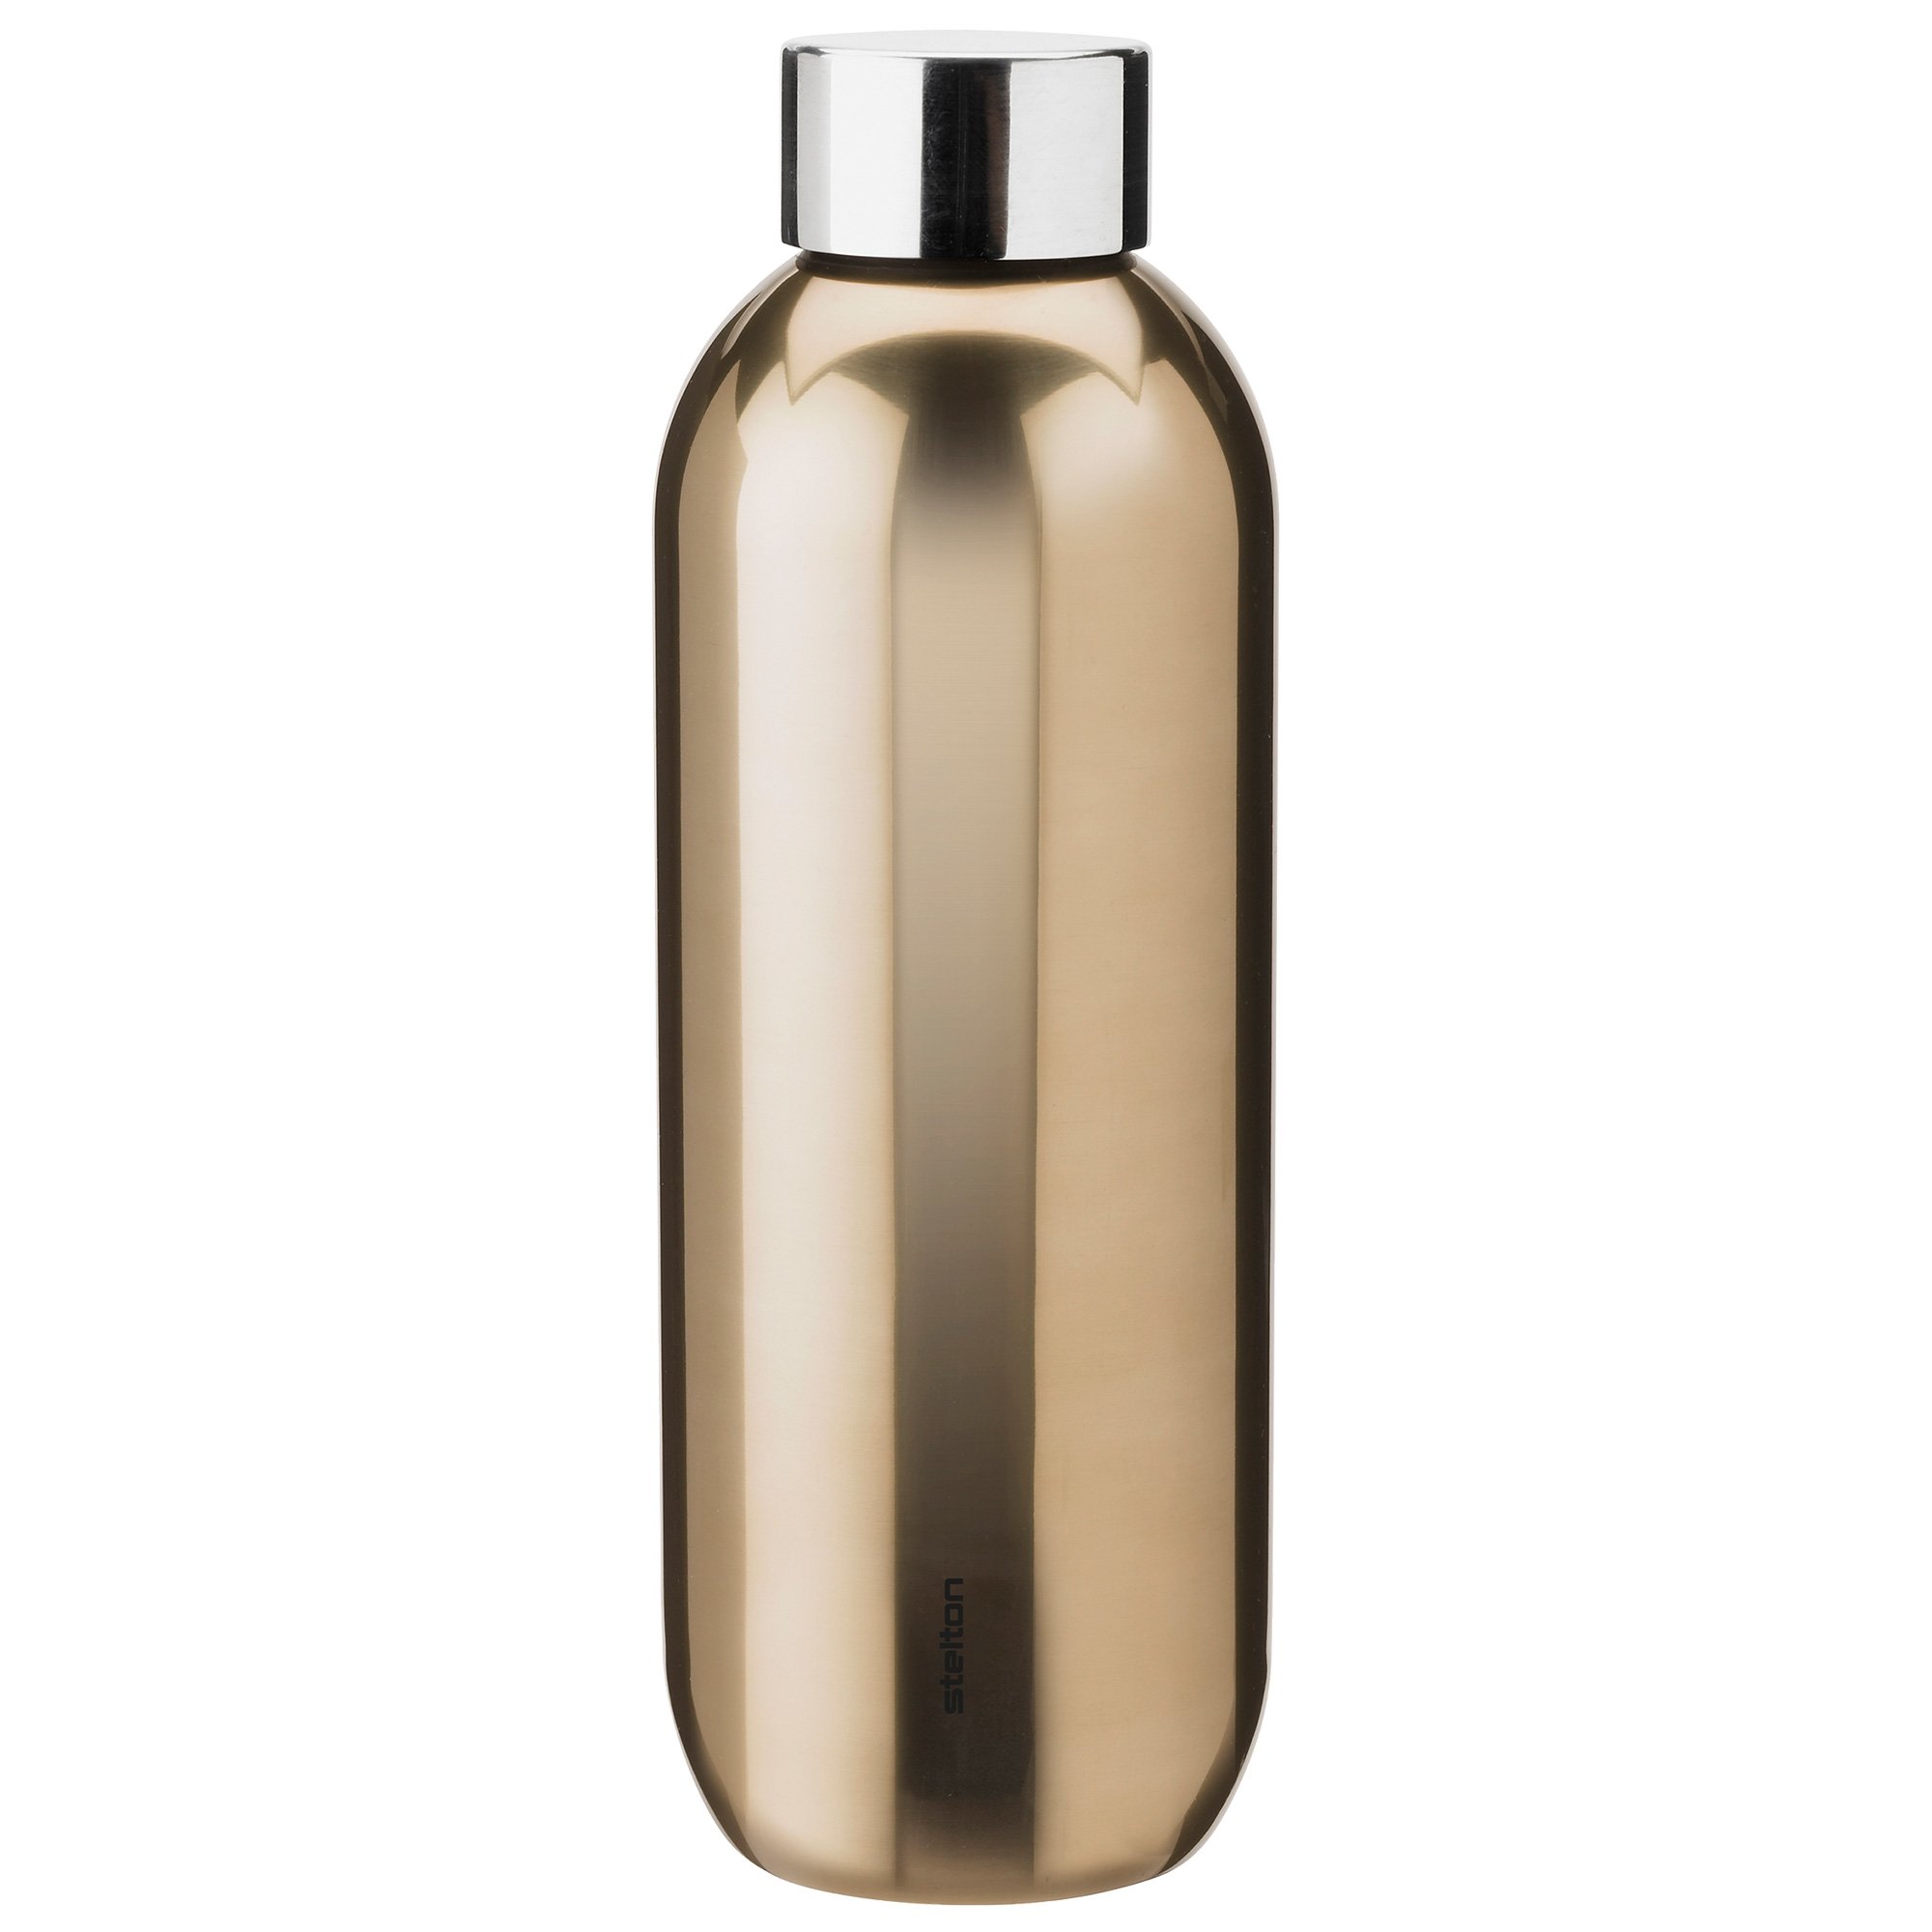 Stelton Keep Cool Drikkeflaske 0,6 liter, dark gold